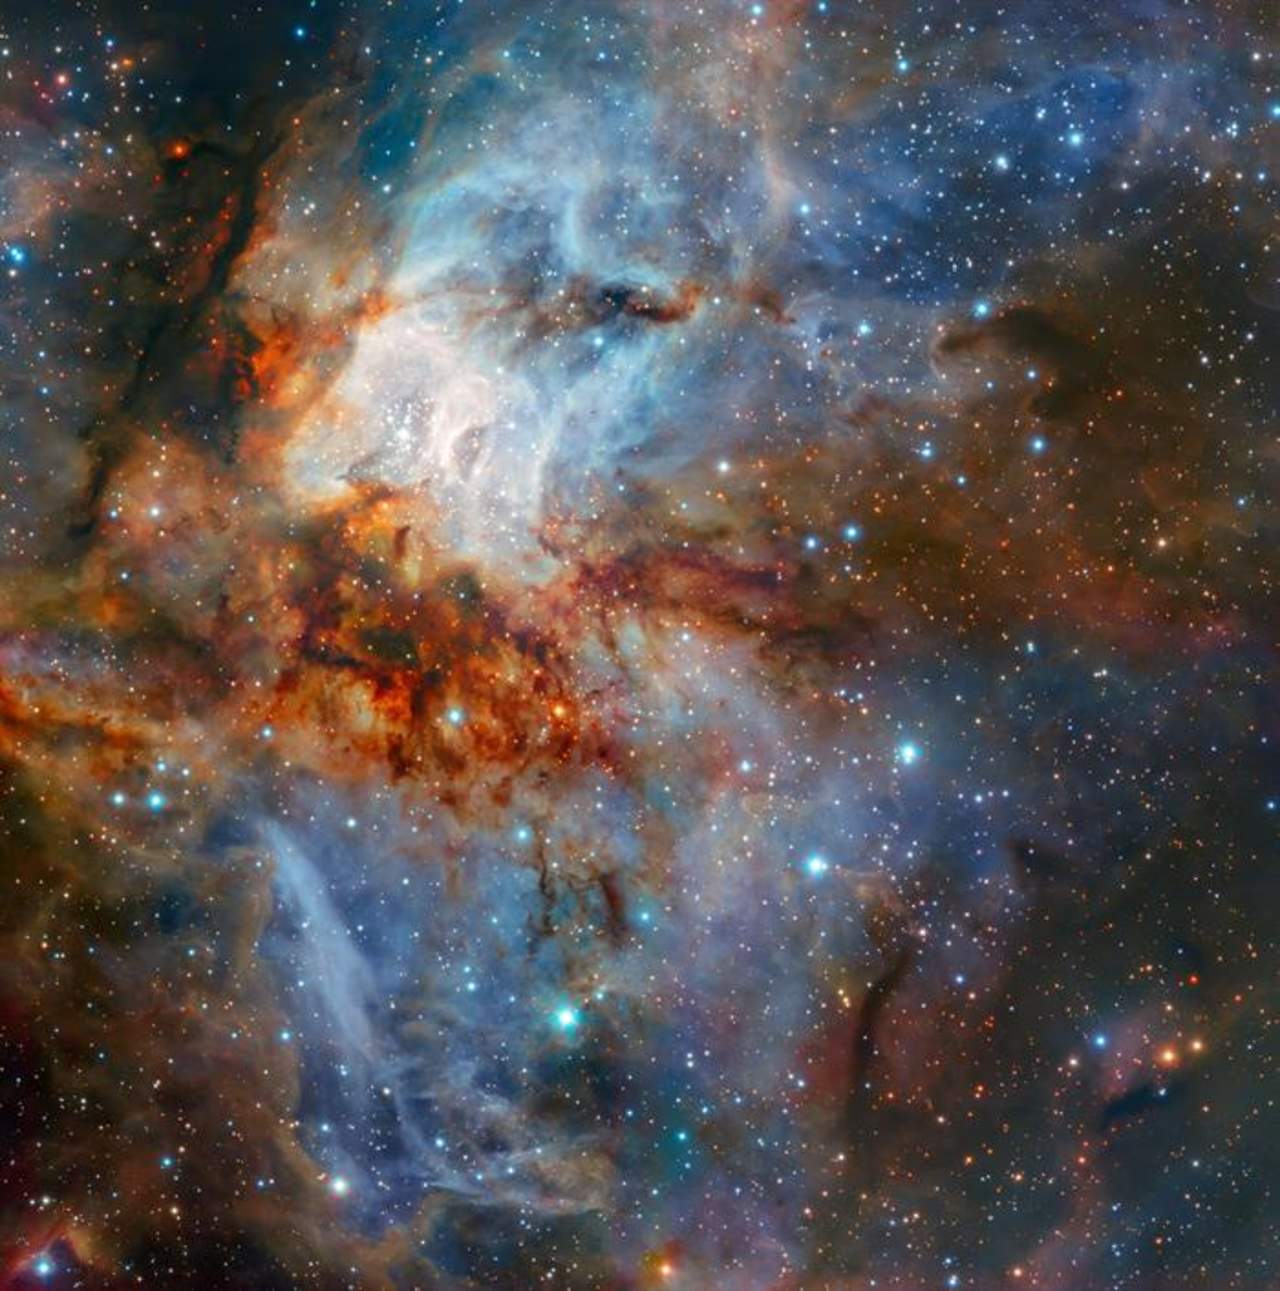 Muestra a este cúmulo estelar joven rodeado de nubes de gas intensamente brillantes y detalladas, junto con trazos de polvo oscuro en forma de enredadera en torno al núcleo. (EFE)